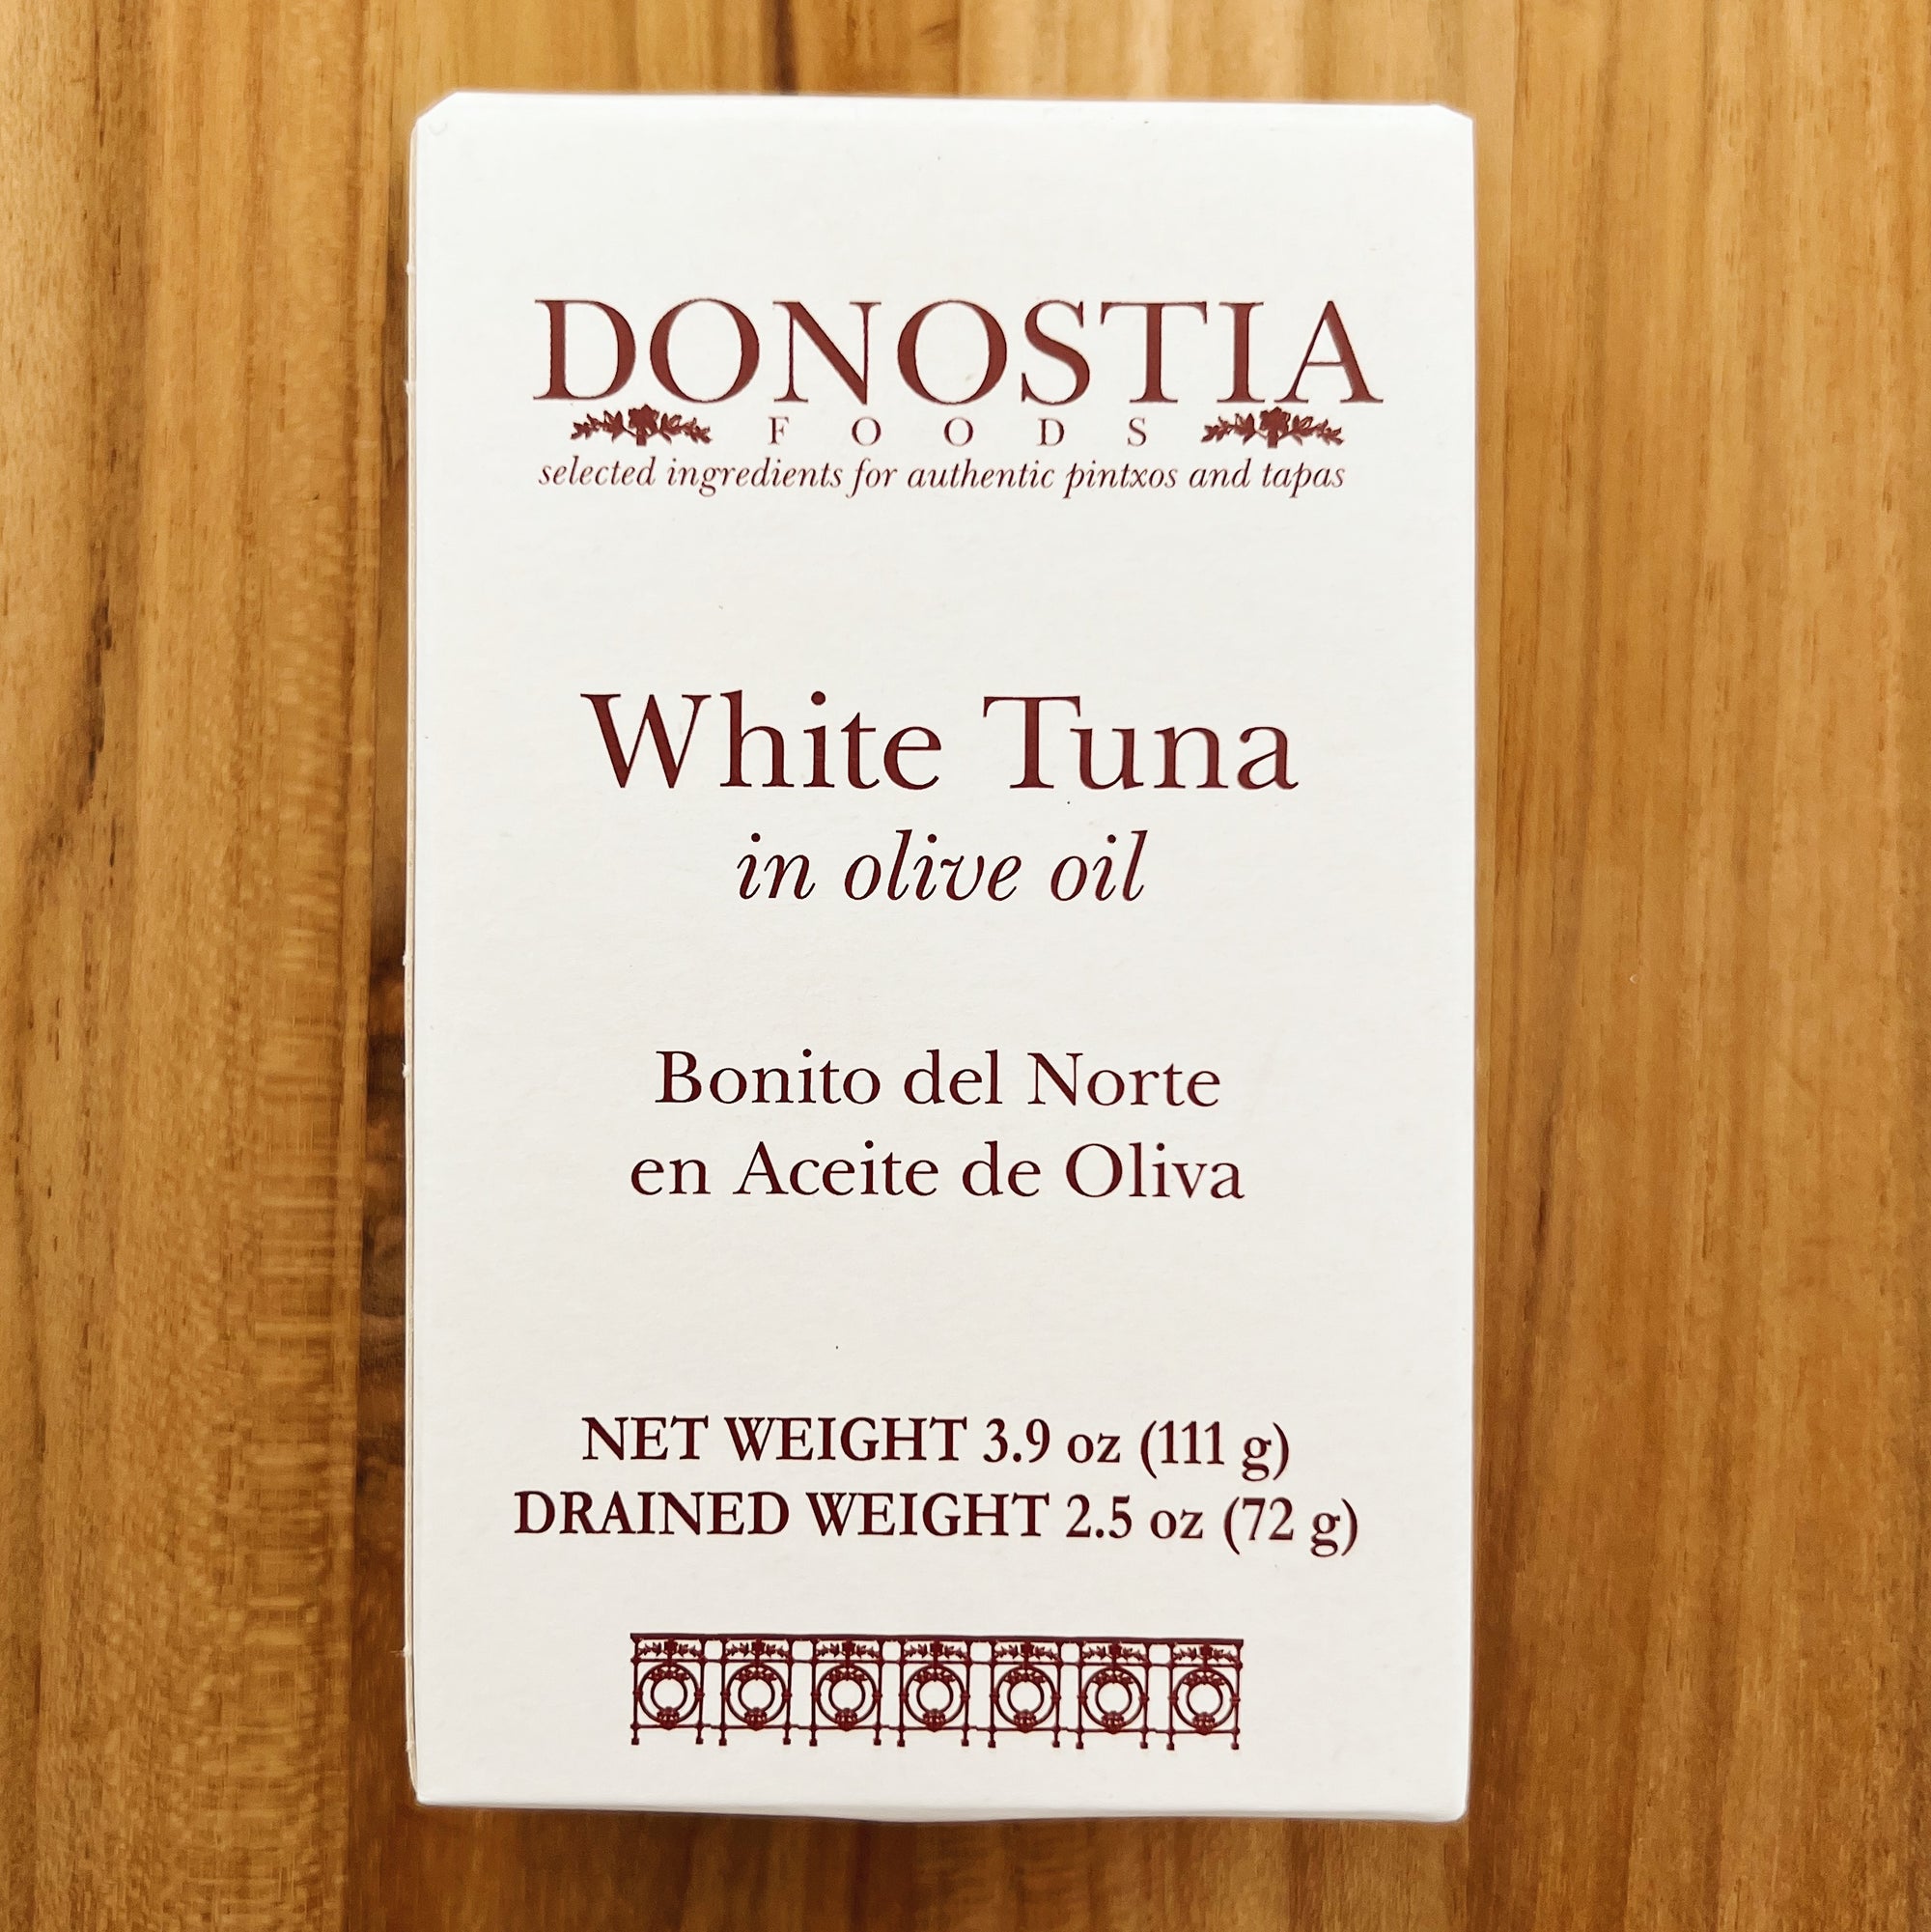 Cartonette - Bonito del Norte tuna in olive oil - Donostia Foods